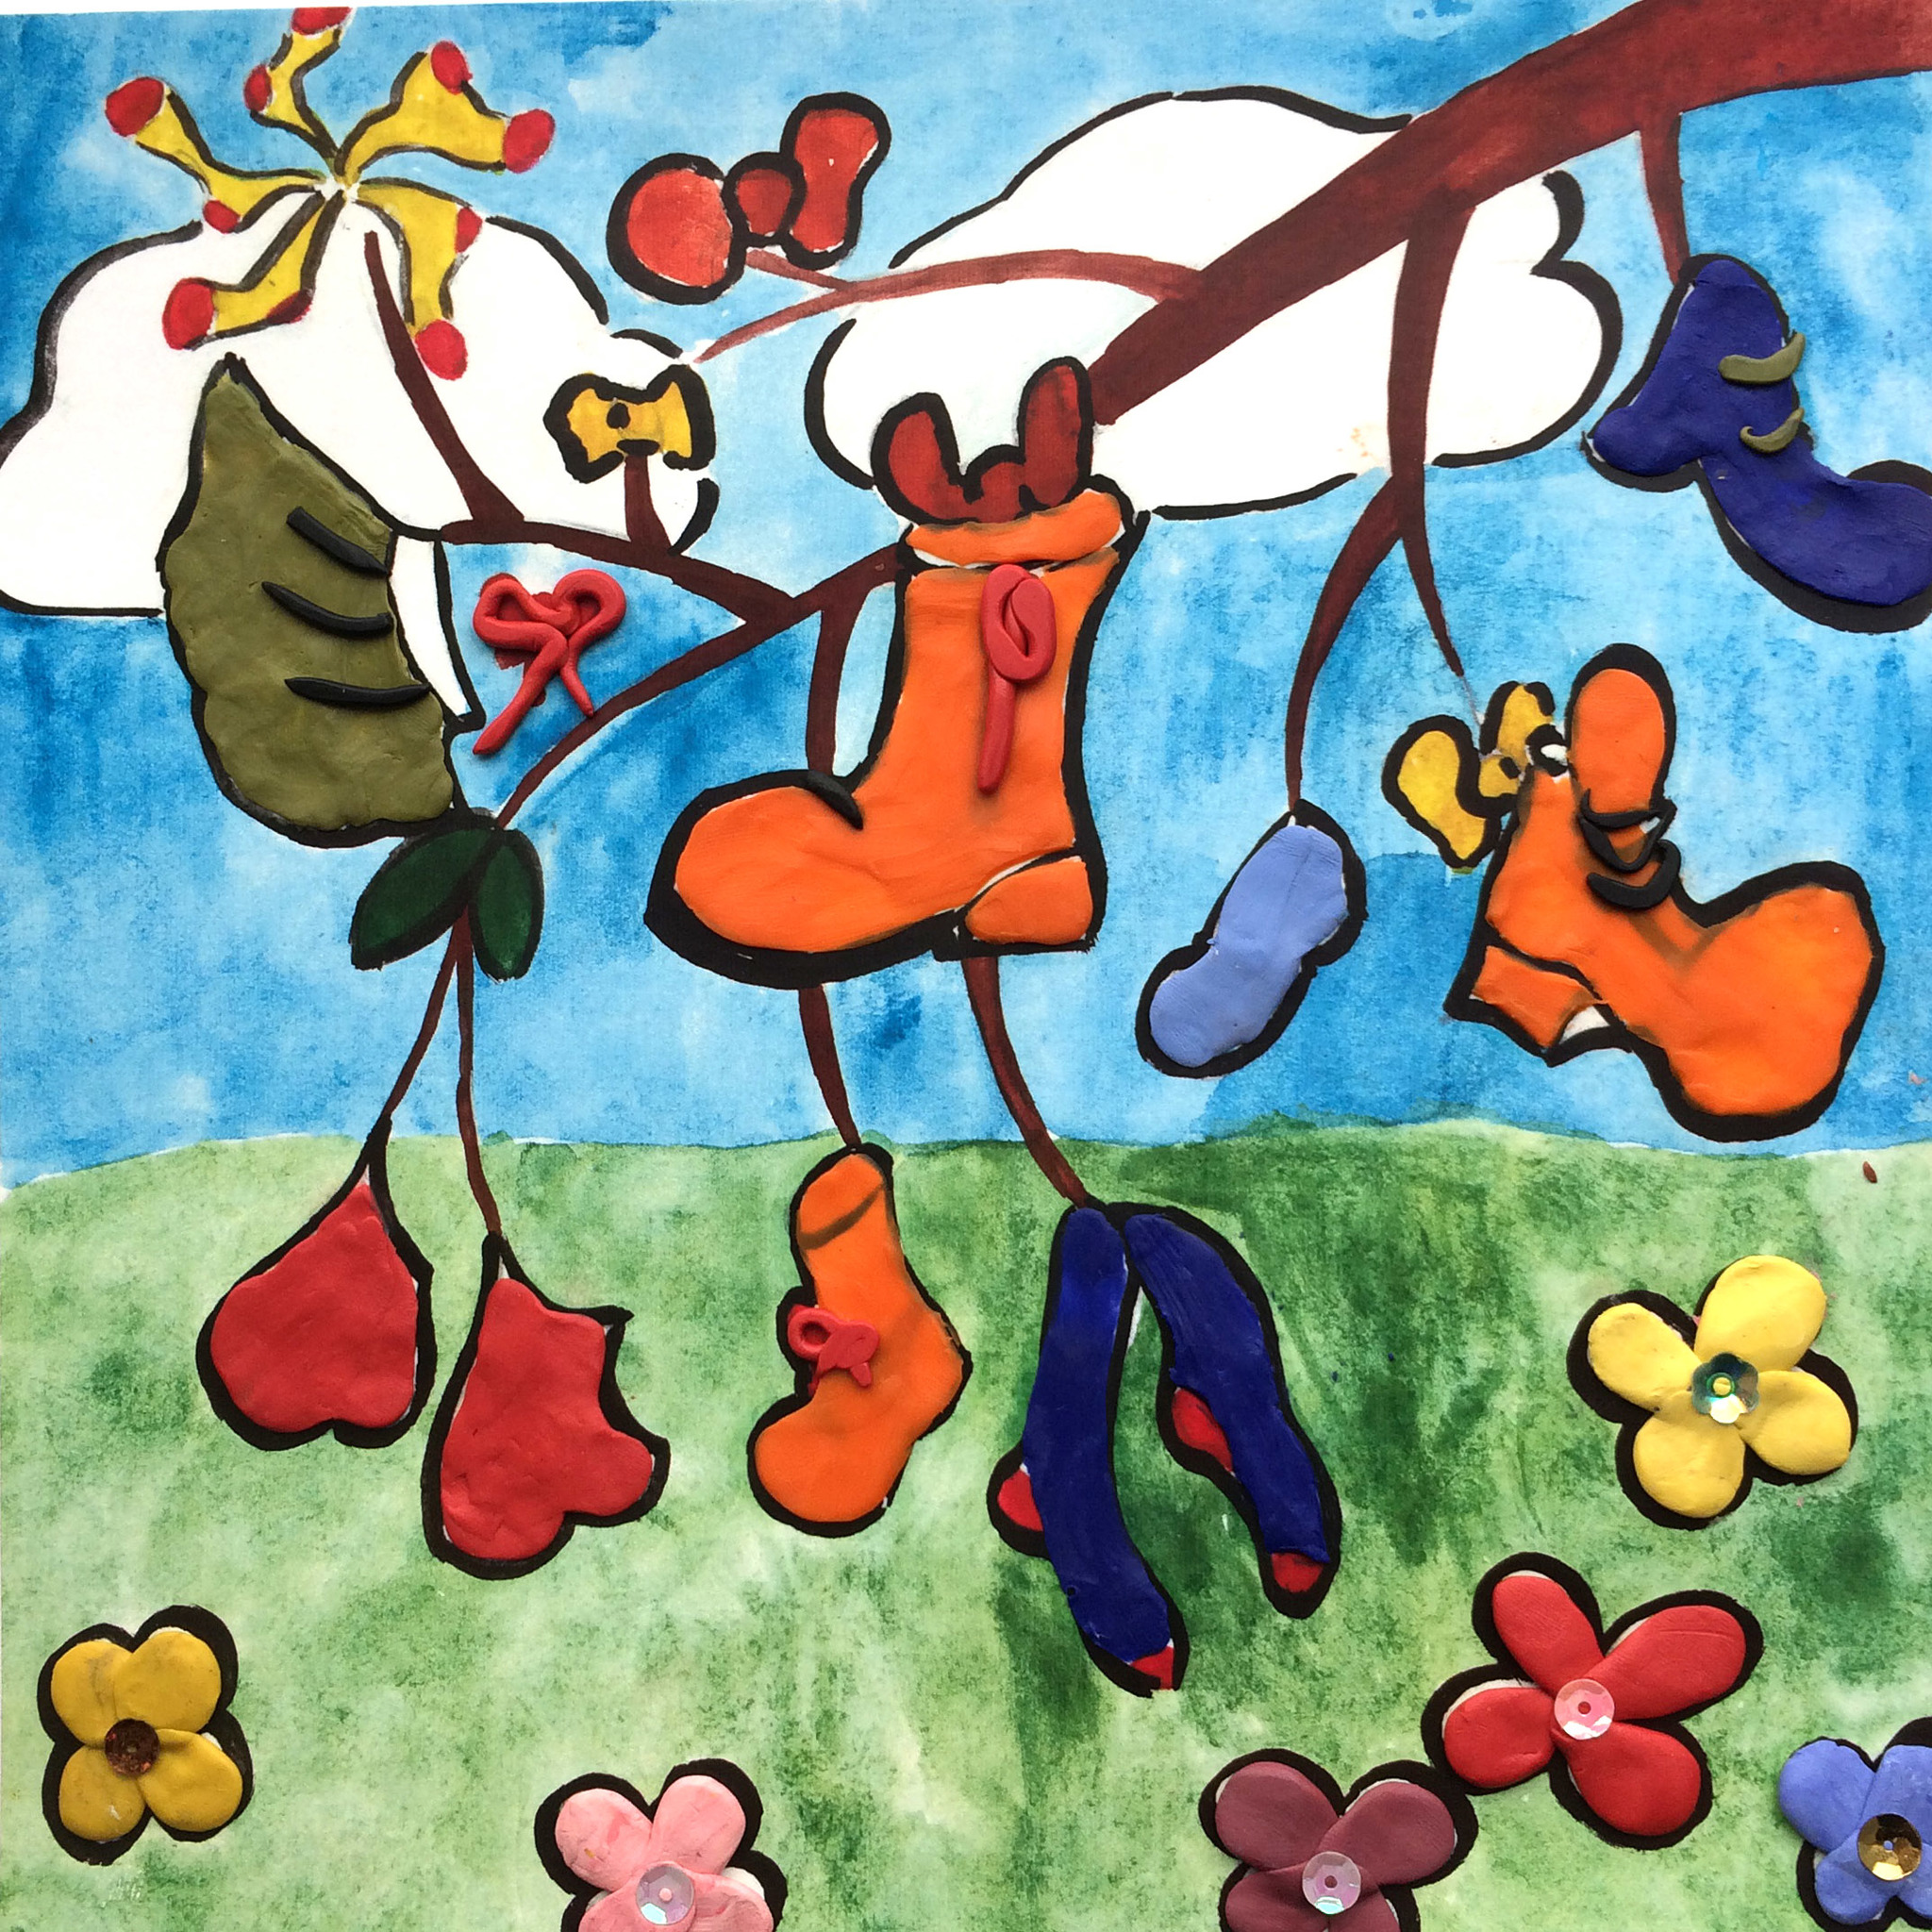 Иллюстрация к стихотворению чудо дерево Чуковского